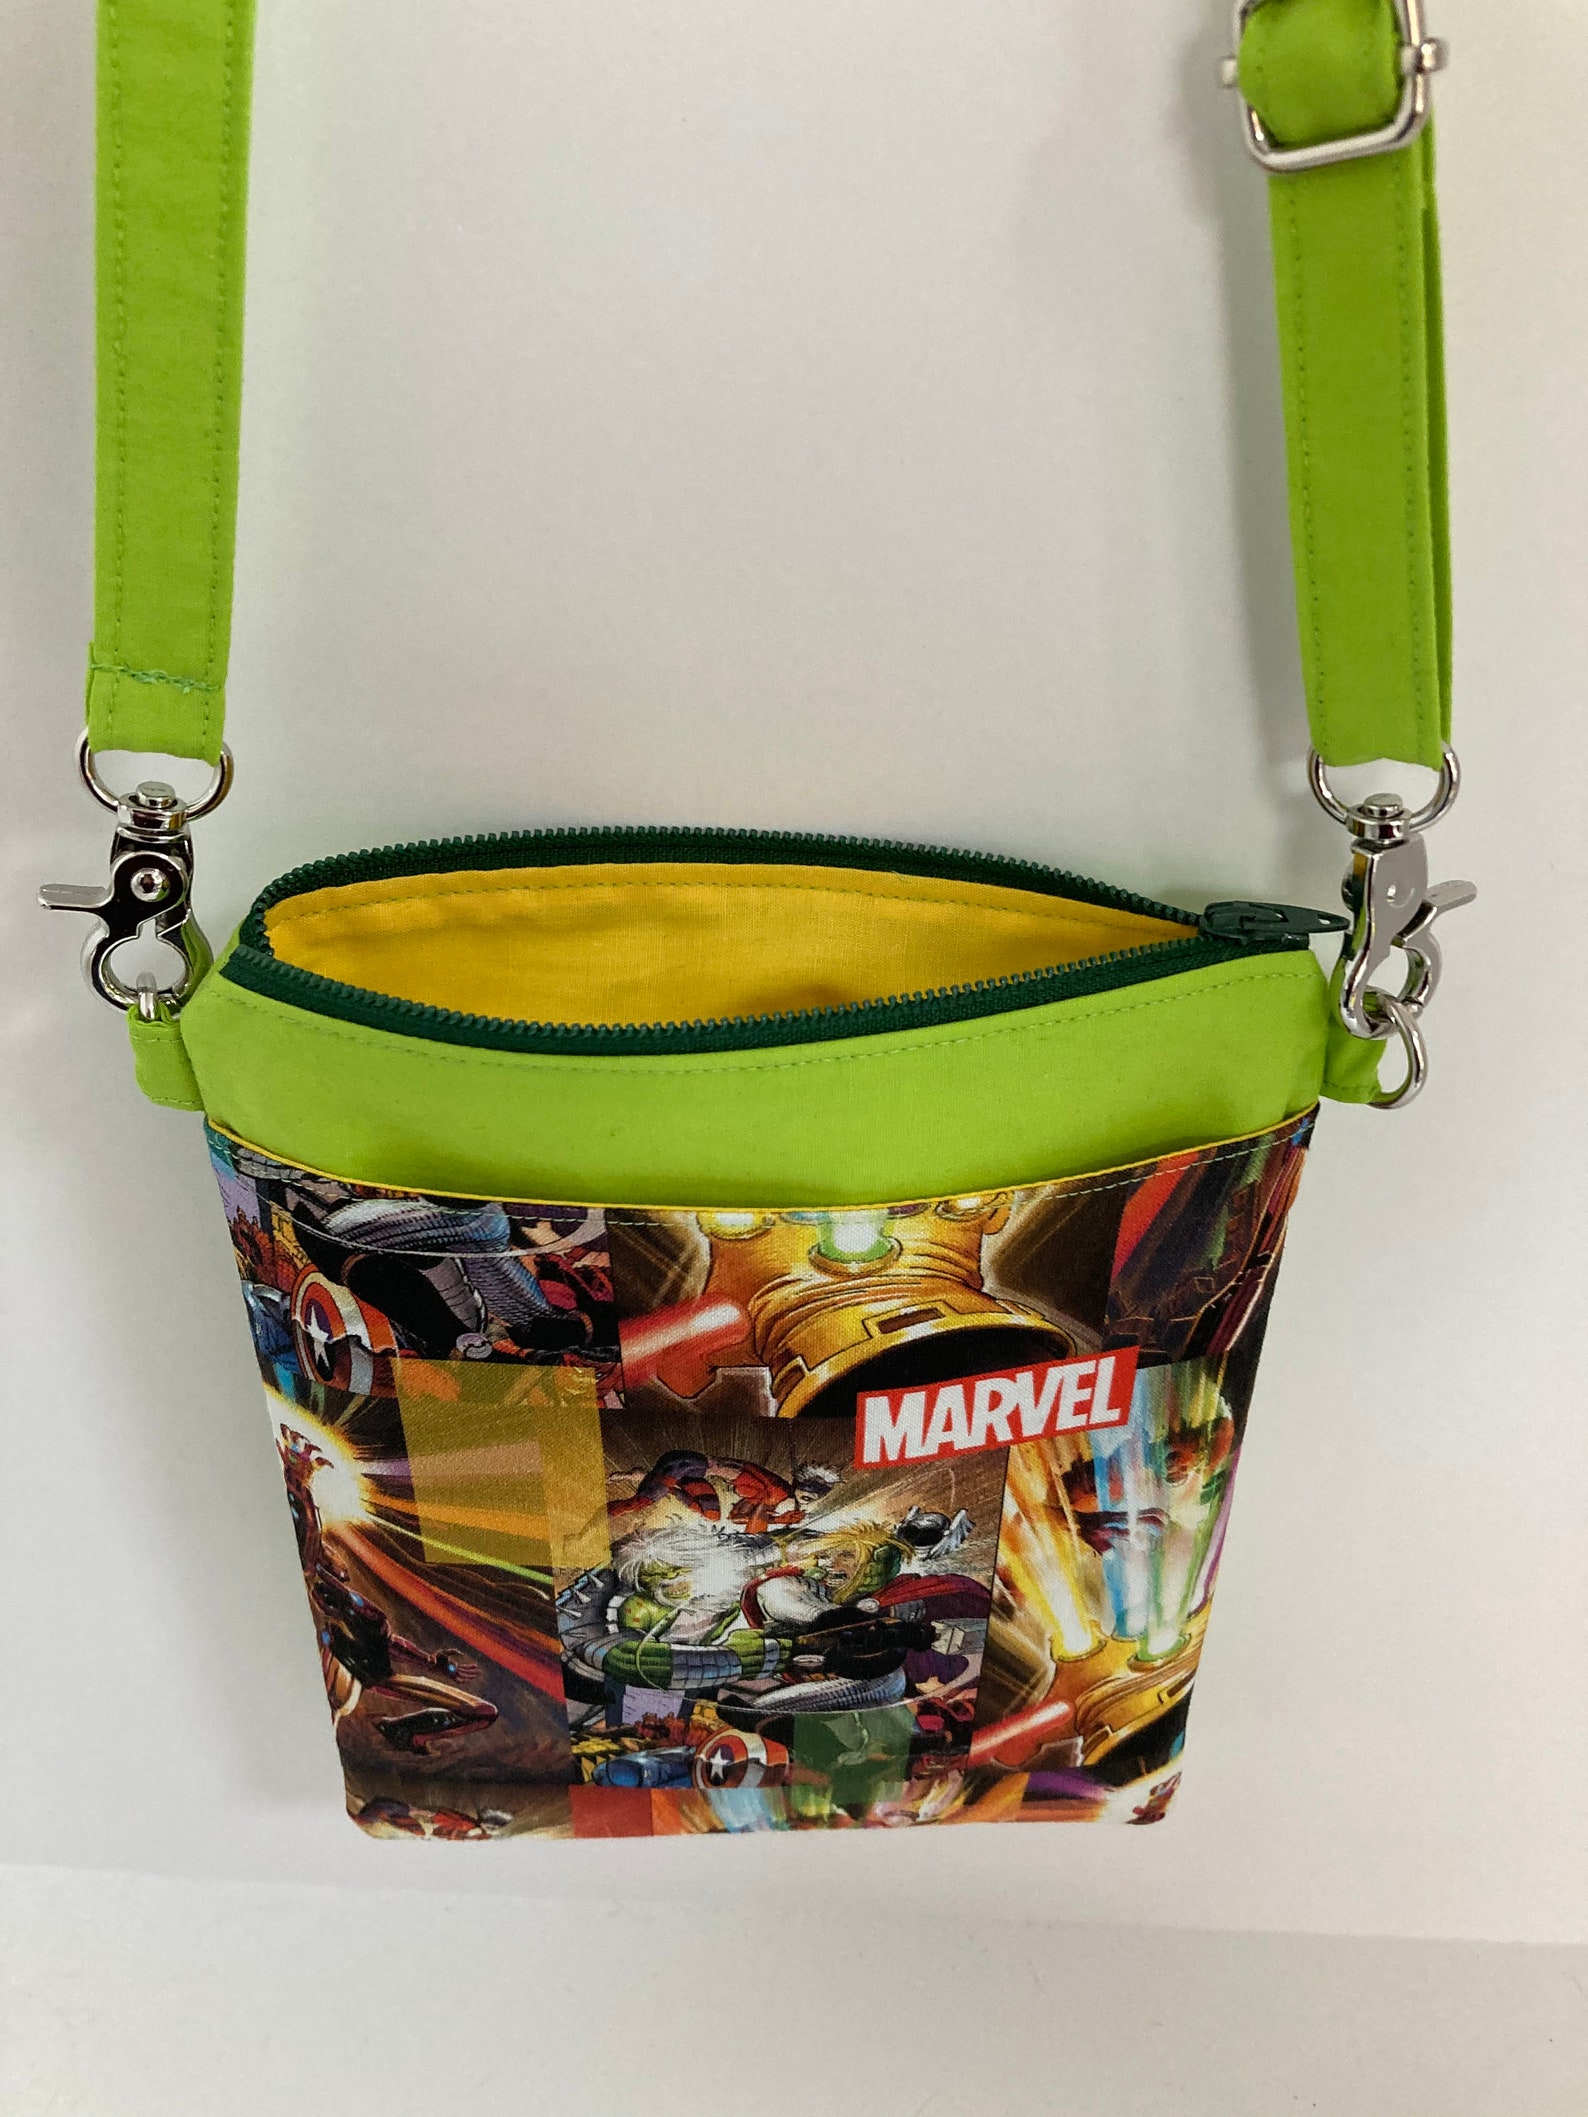 Marvel Cross Body Bag Marvel Small Purse Marvel Crossbody - Etsy